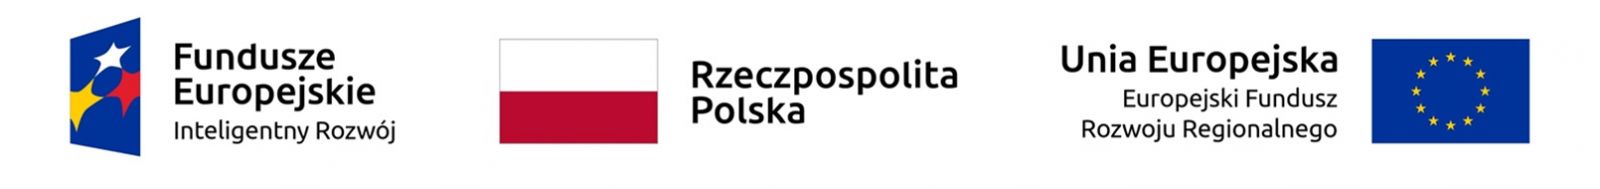 Logotypy informujące o dofinansowaniu z Funduszy Unii Europejskiej